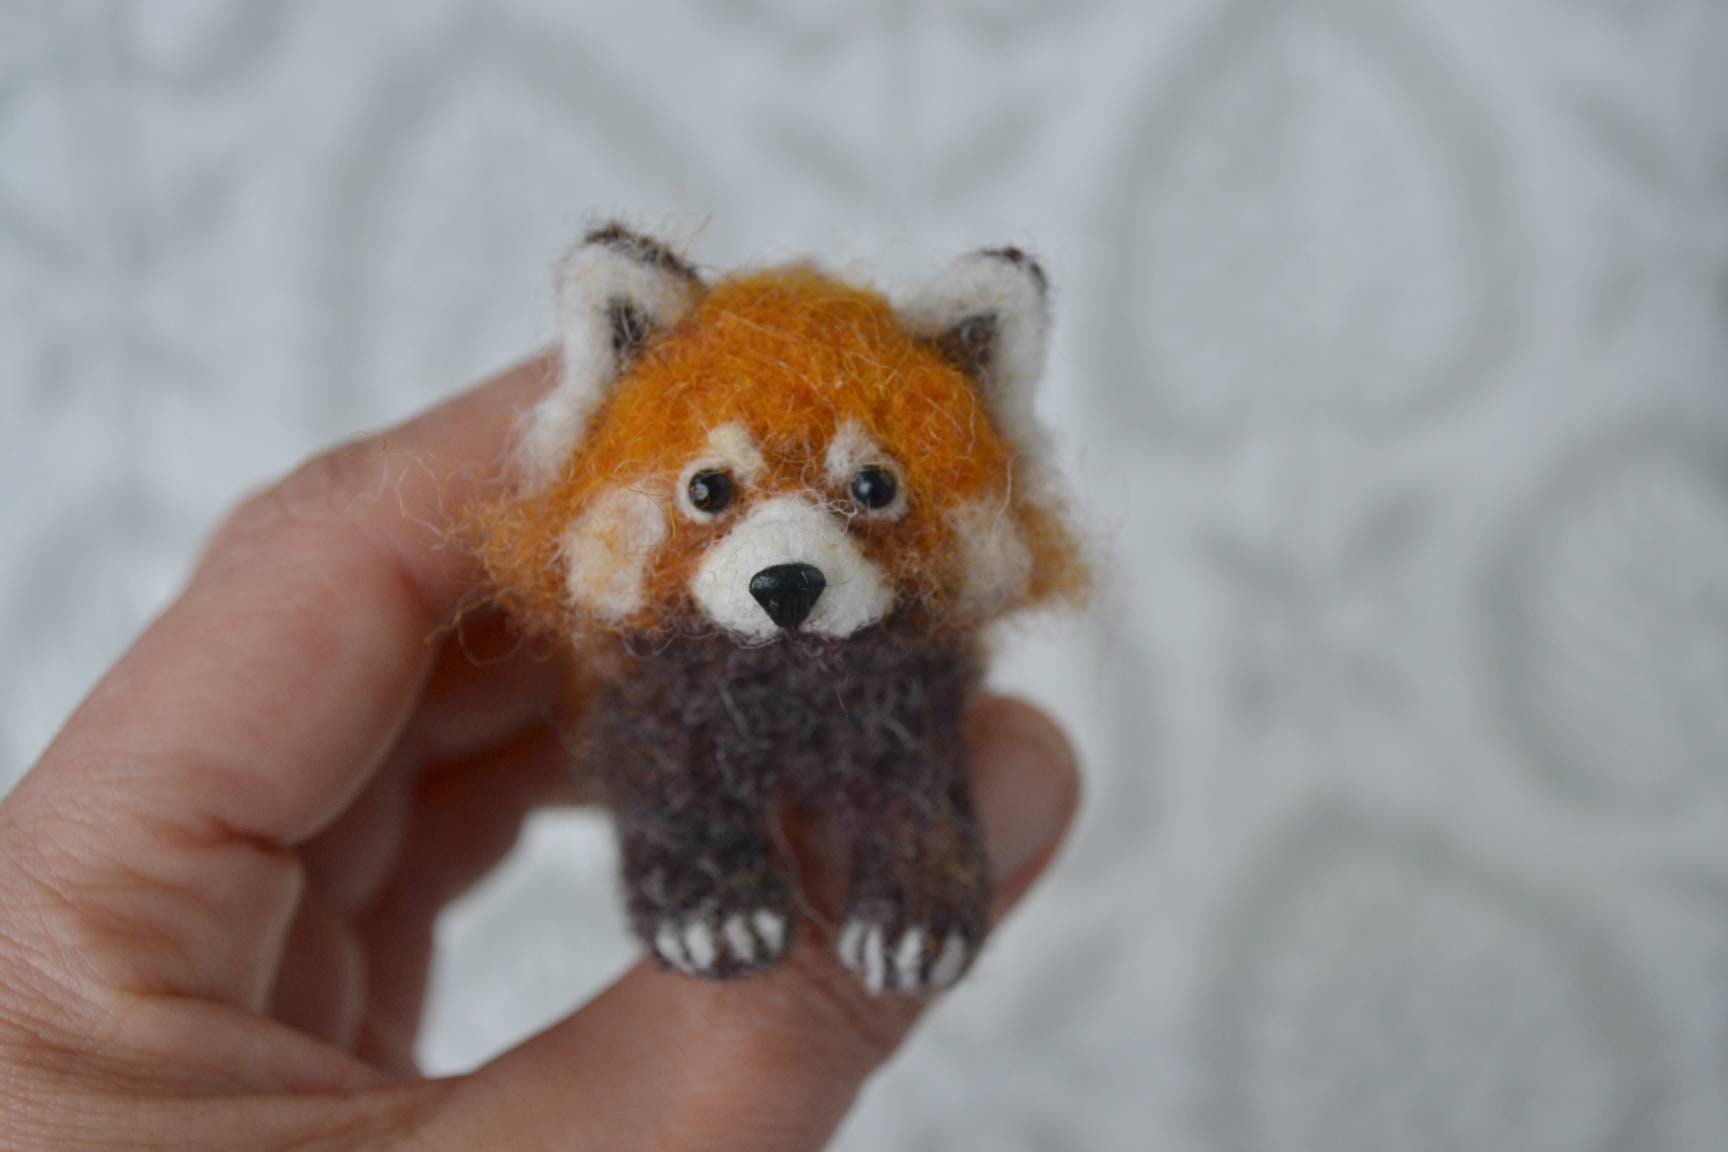 Red Panda Wool Felting Craft Kit – Bootyland Kids